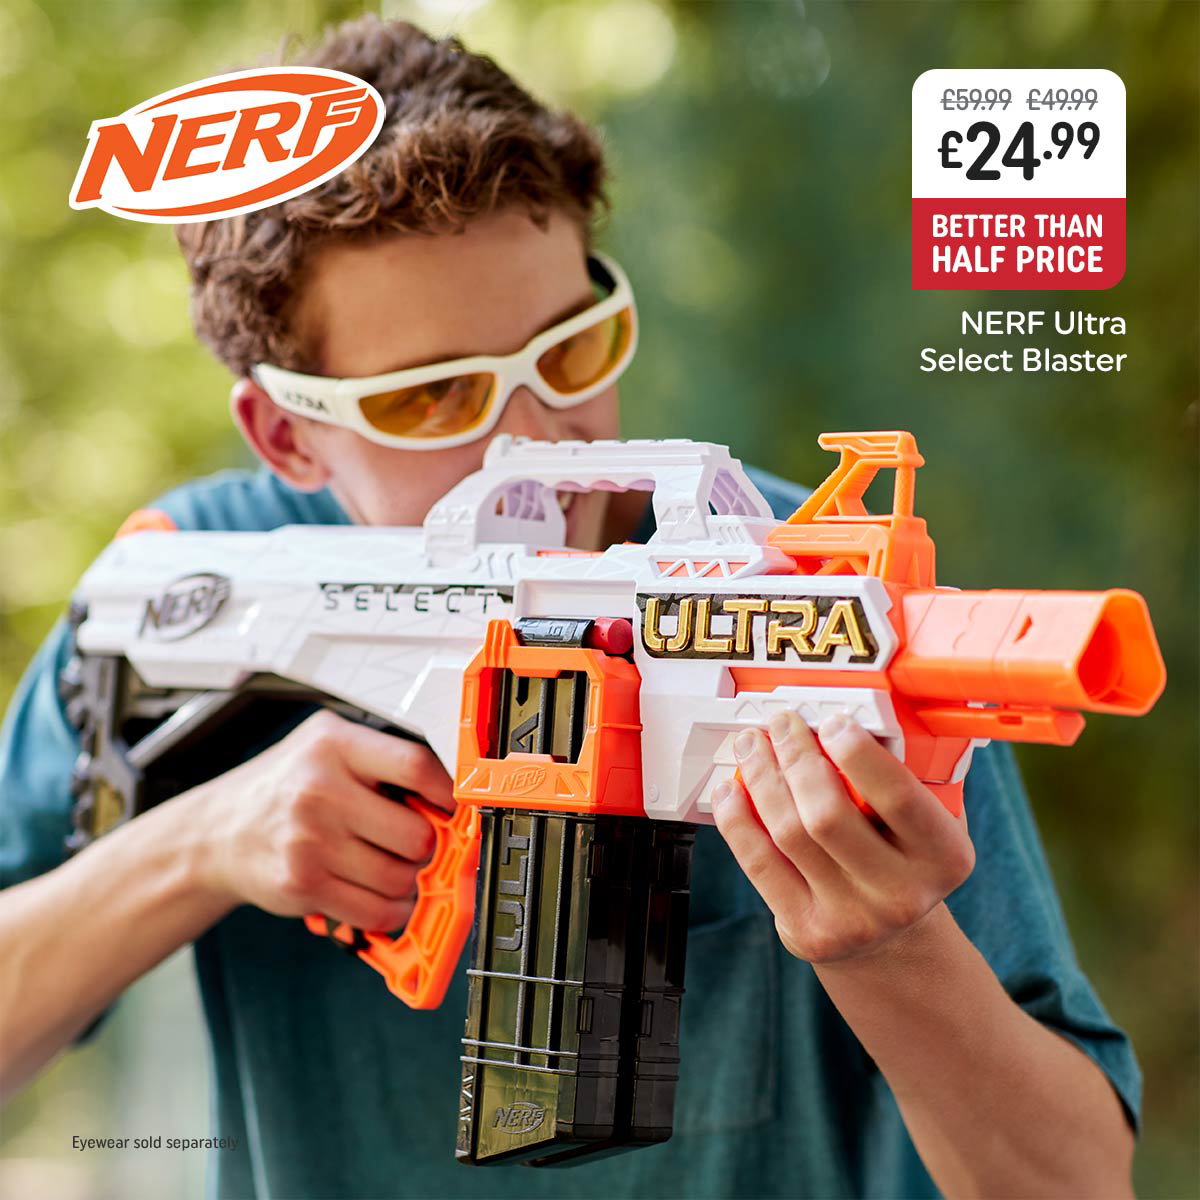 NERF Roblox Zombie Attack: Viper Strike Dart Blaster- Smyths Toys